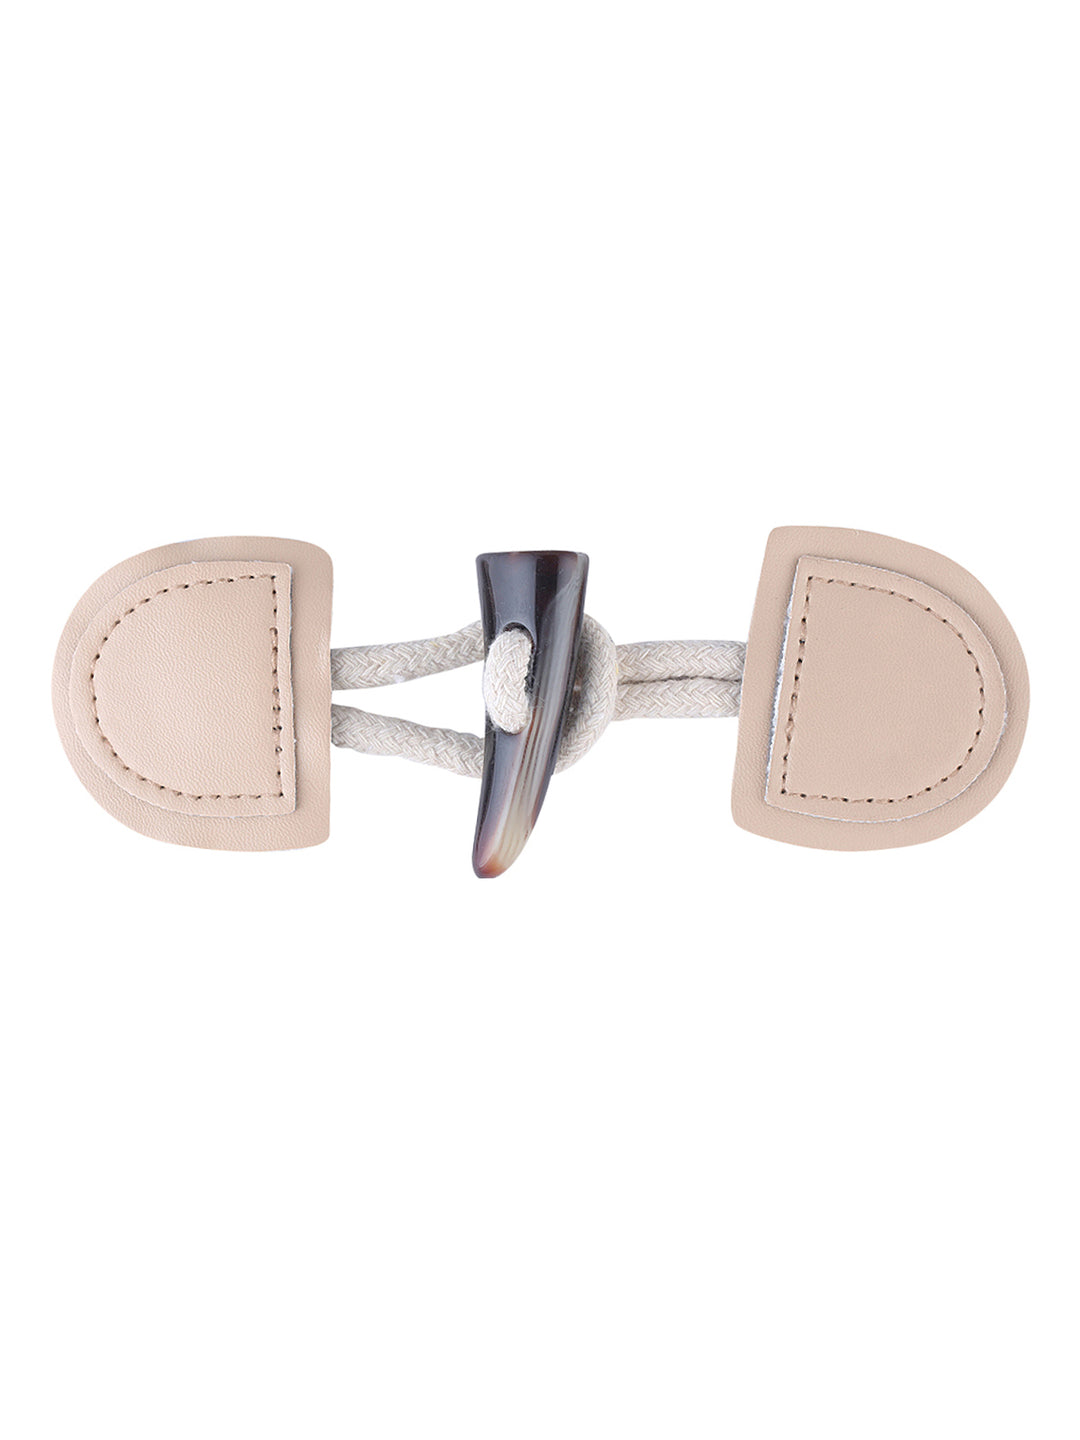 Cream PU Leather Horn Toggle Coat Closure